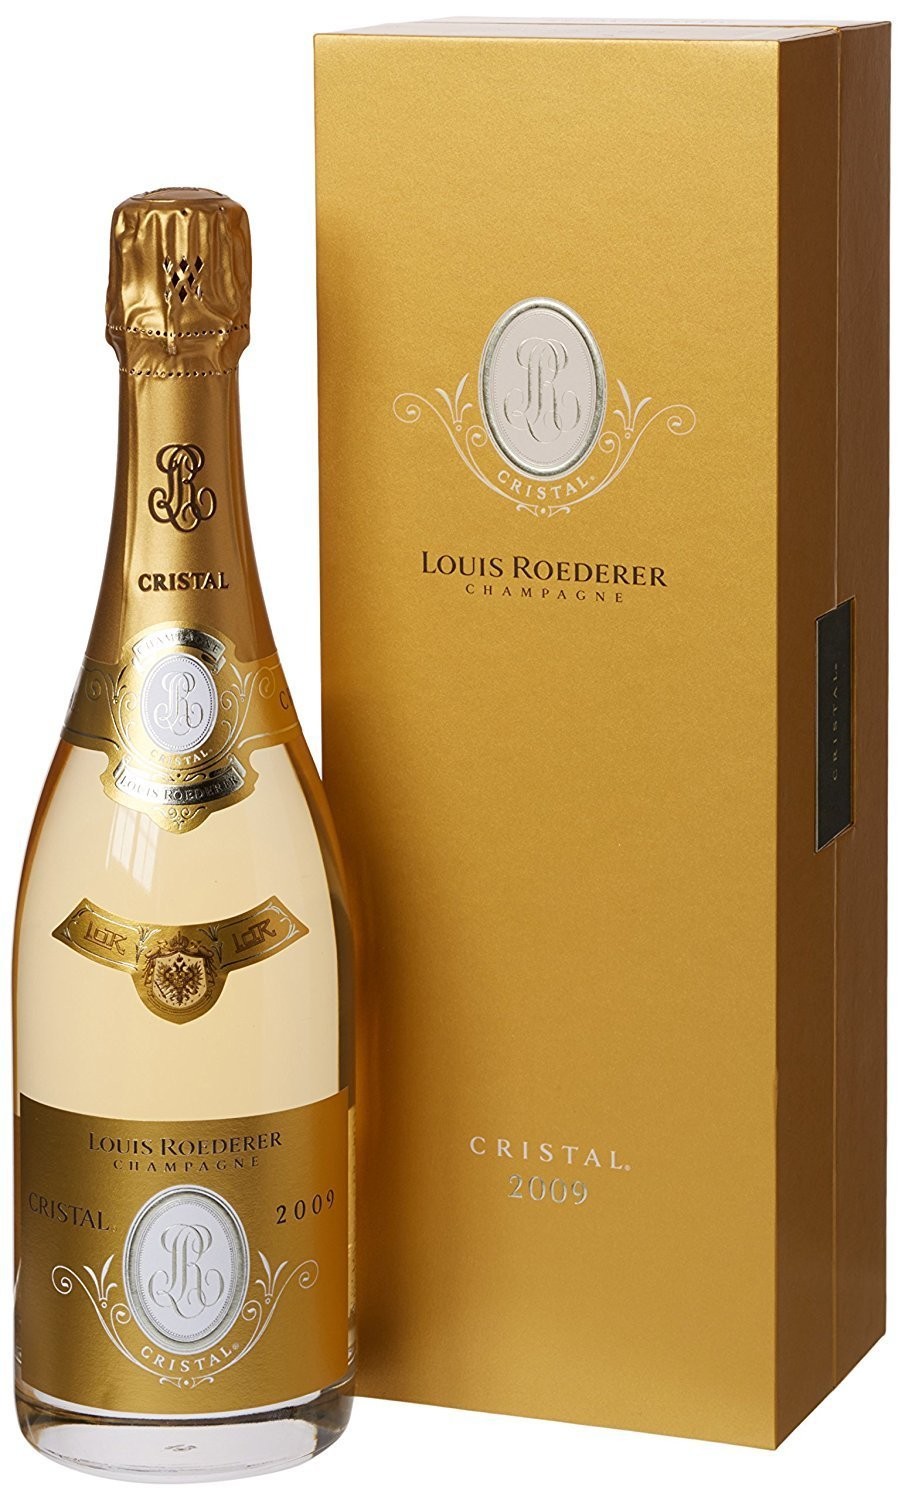 Champagne Cristal 2009 Louis Roederer - Cofanetto Originale